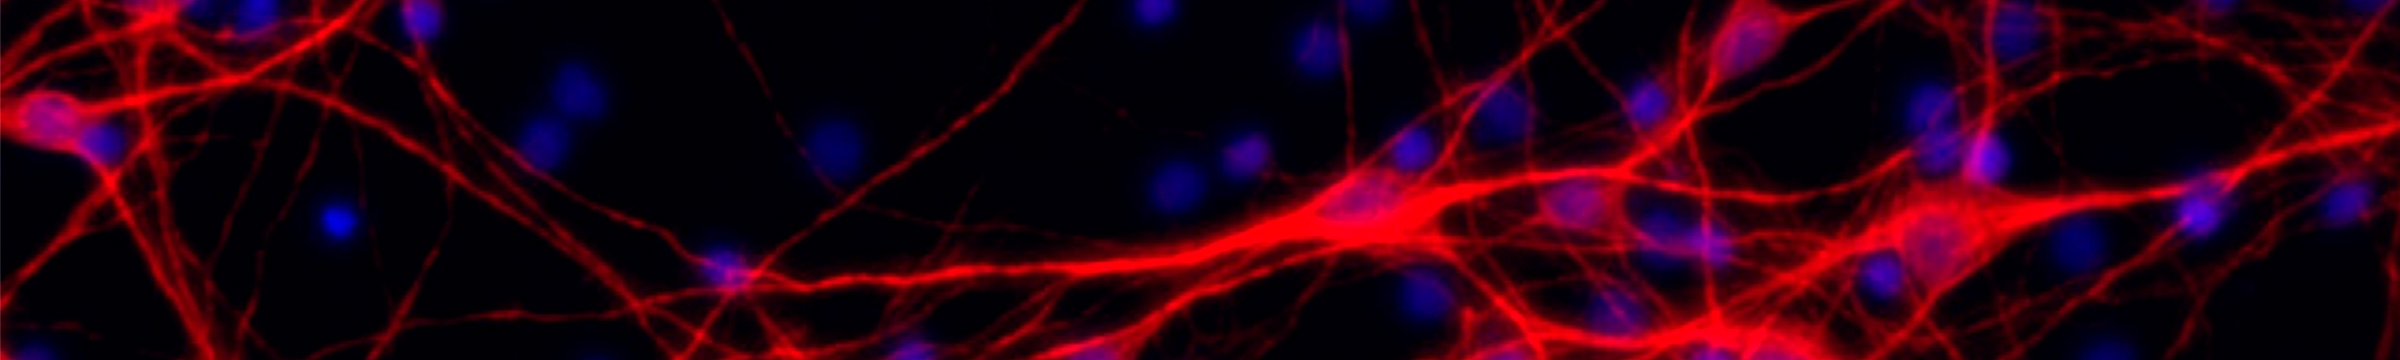 Image neurones